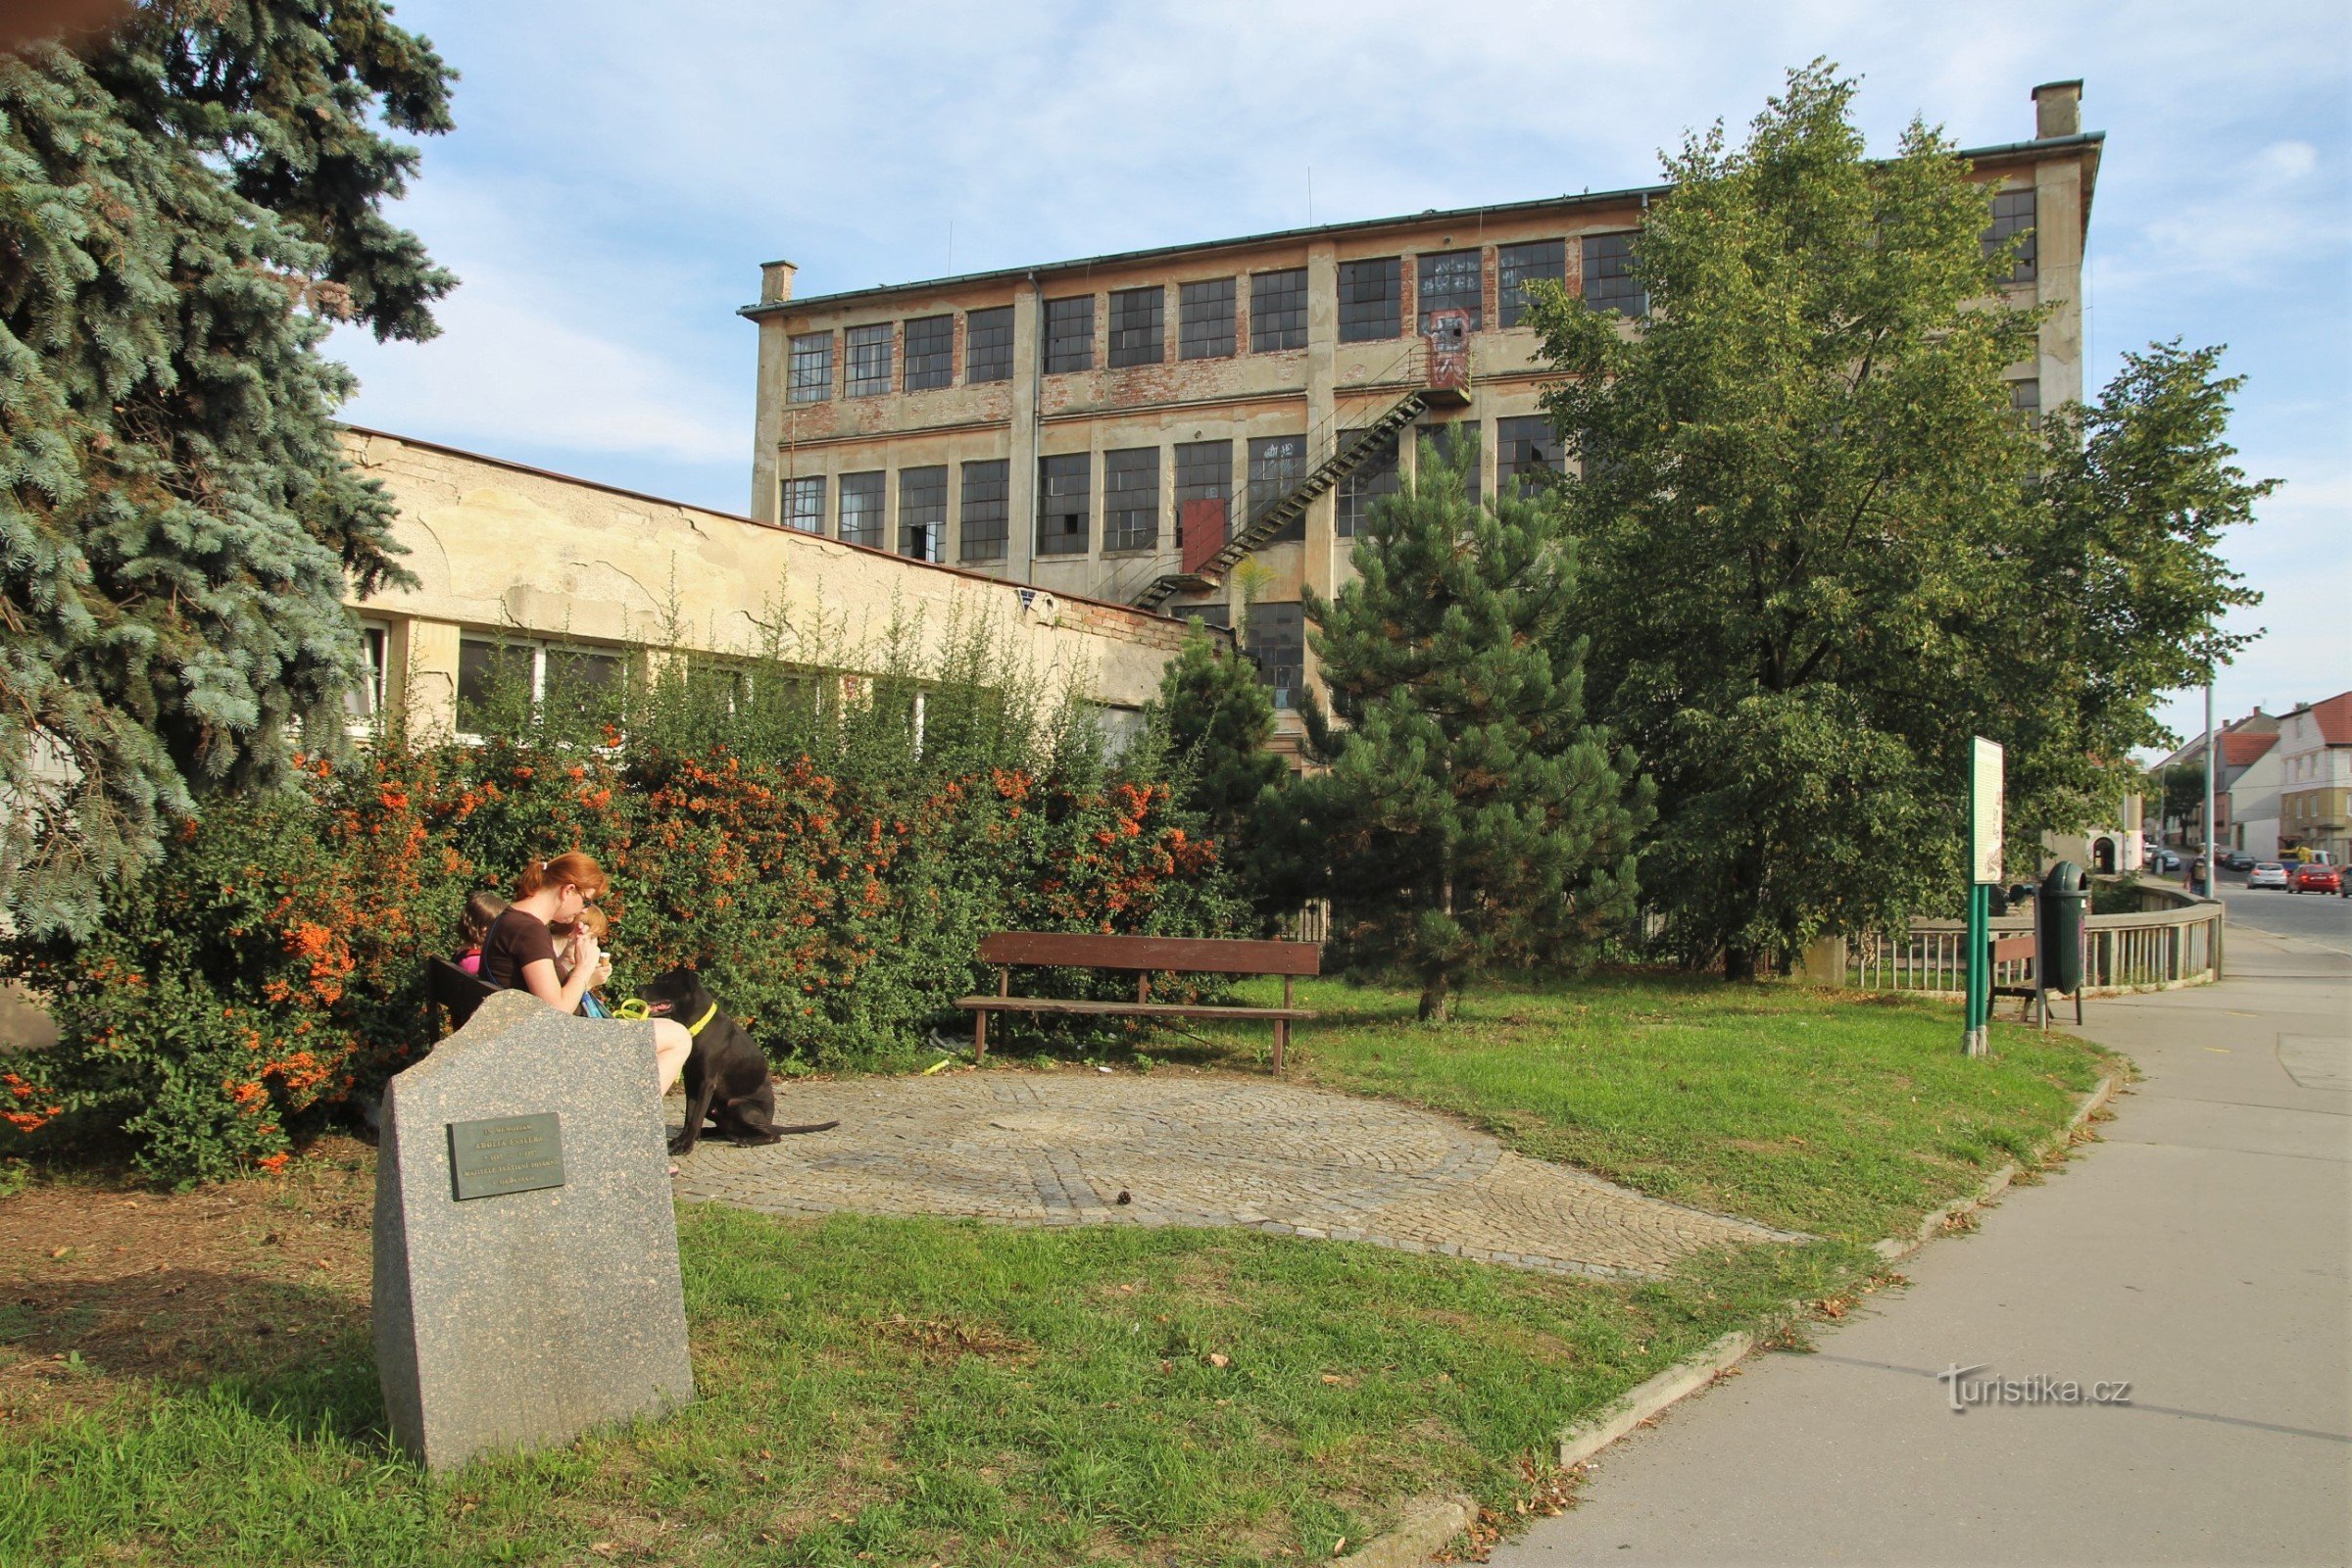 エスラー工場の建物を背景に、アドルフ・エスラーの記念碑